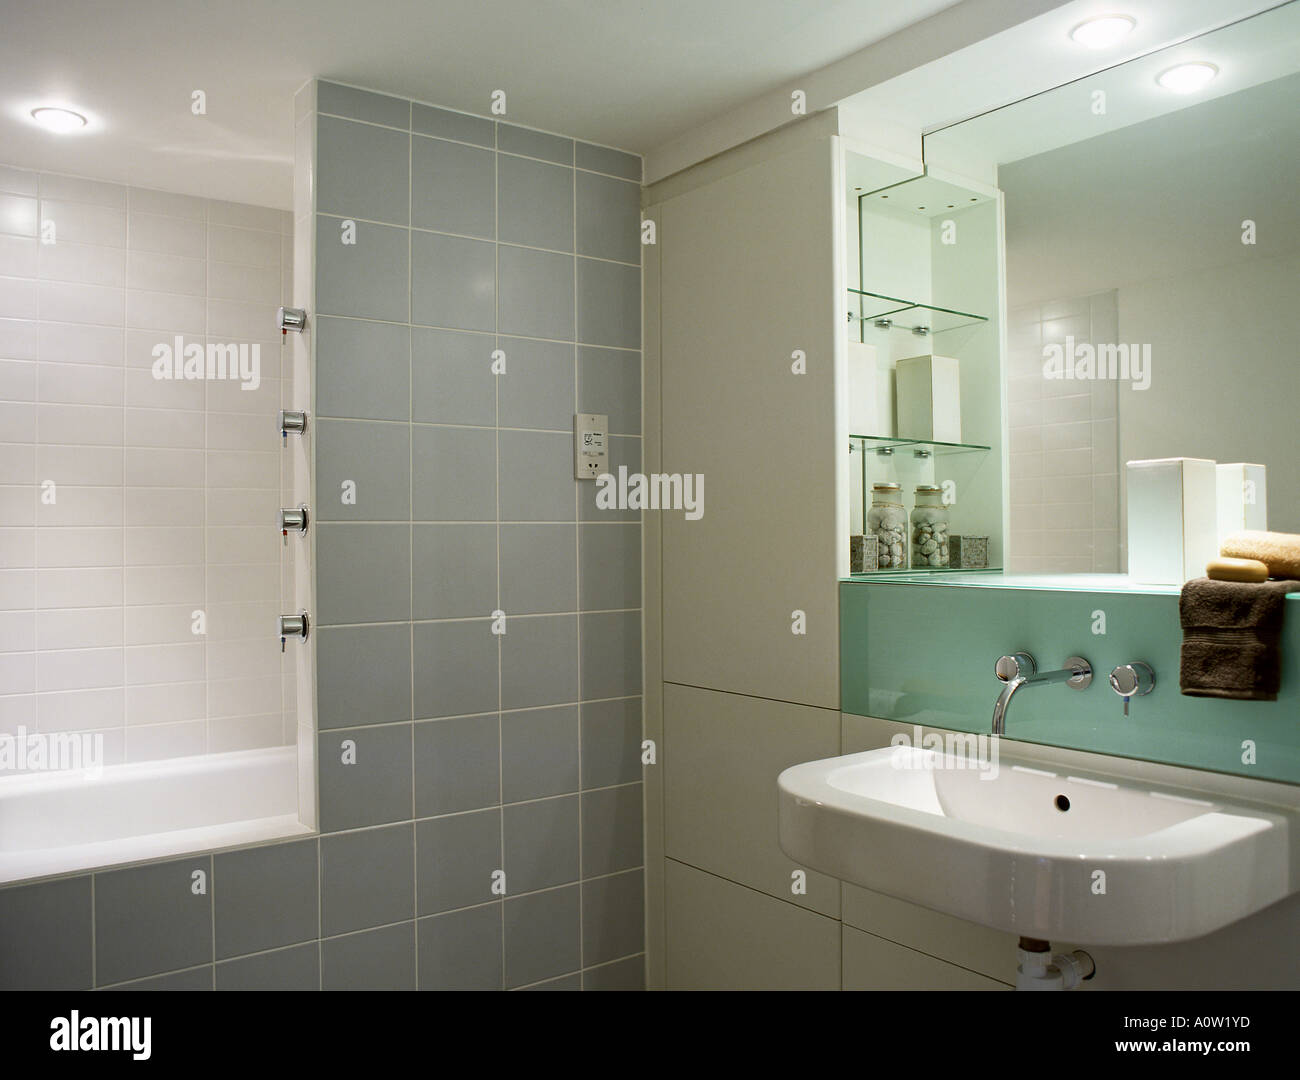 Une salle de bains de style contemporain de l'intérieur. Photo par paddymcguinness Paddy McGuinness Banque D'Images